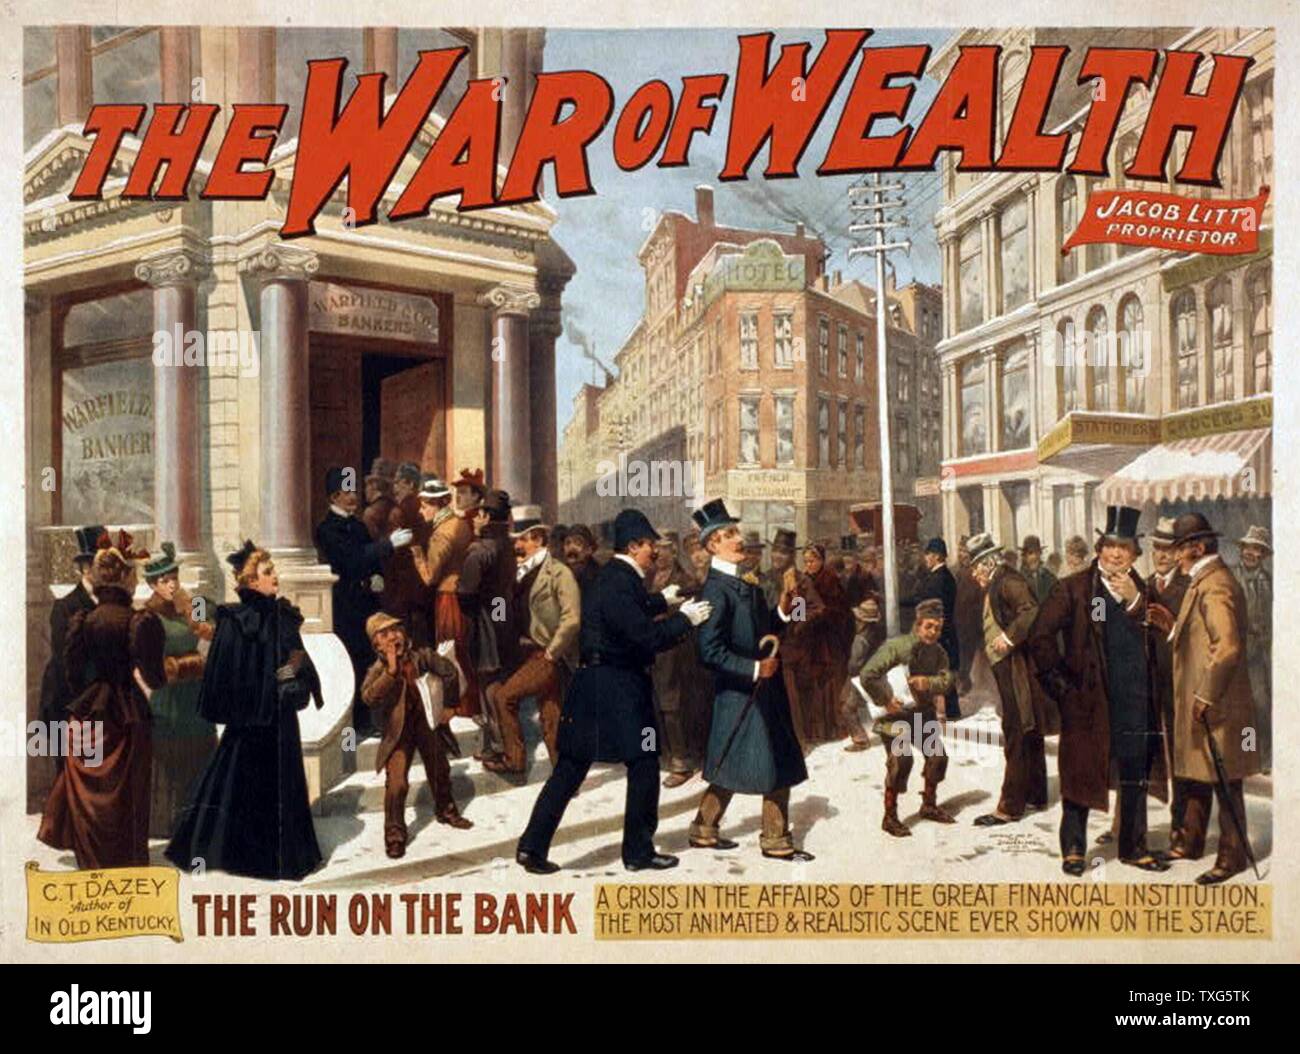 Charles Turner Dazey amerikanischen Schule Plakat für "den Krieg von Reichtum" - melodram am Broadway, New York. Von der Panik von 1893, die eine Zeit der wirtschaftlichen Depression in Amerika inspiriert Chromolithograph gekennzeichnet Stockfoto